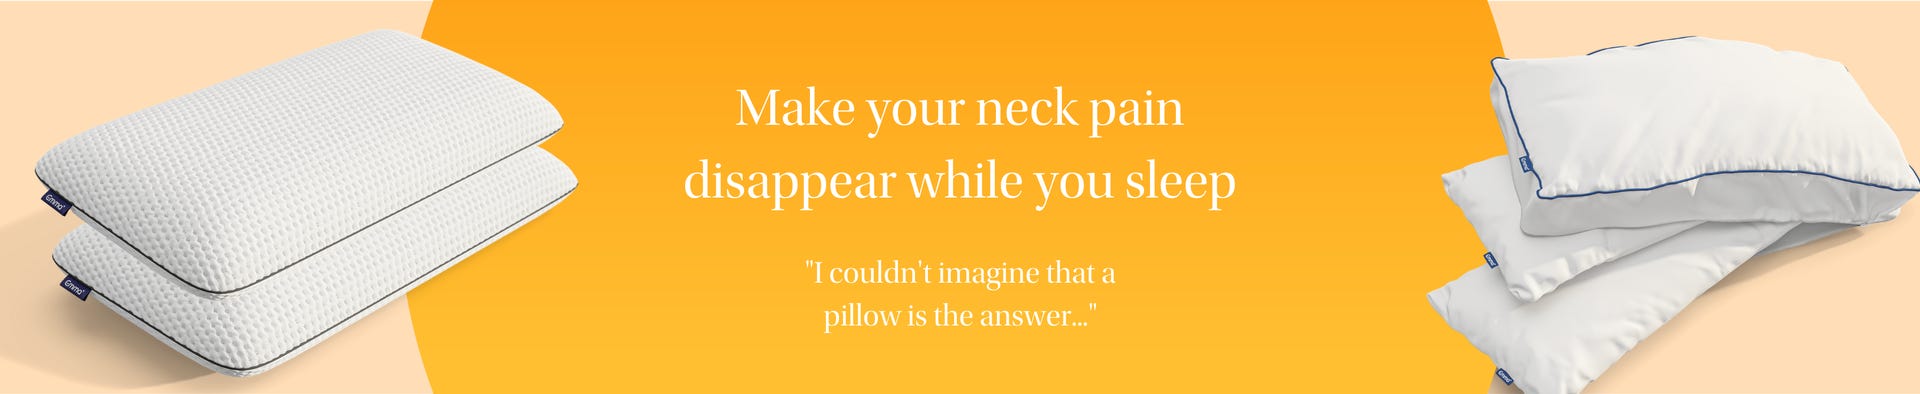 neck pain quote